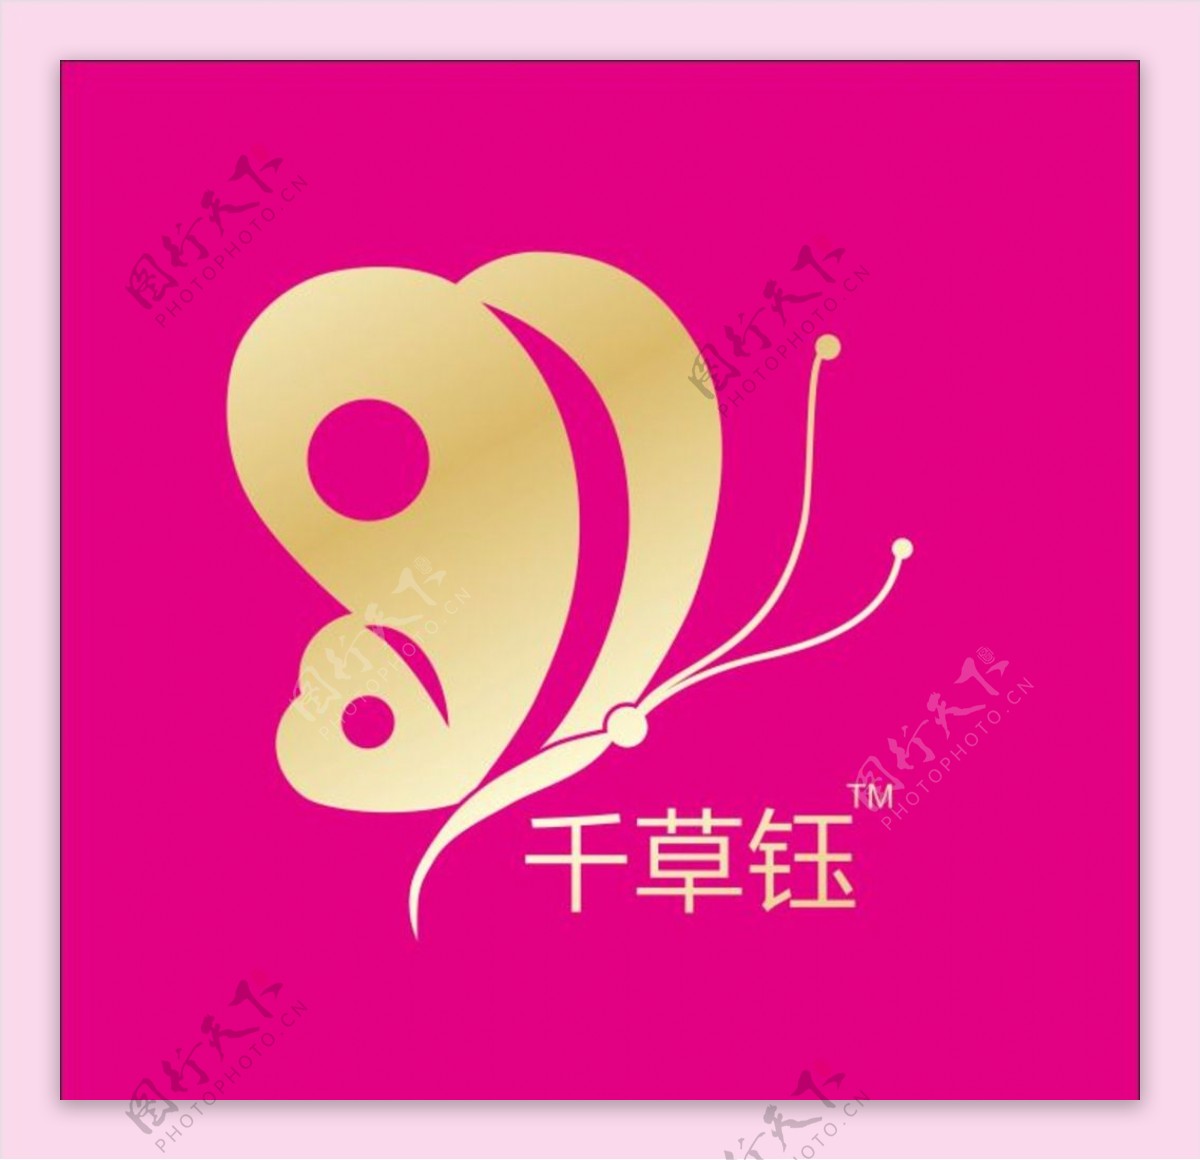 千草钰logo